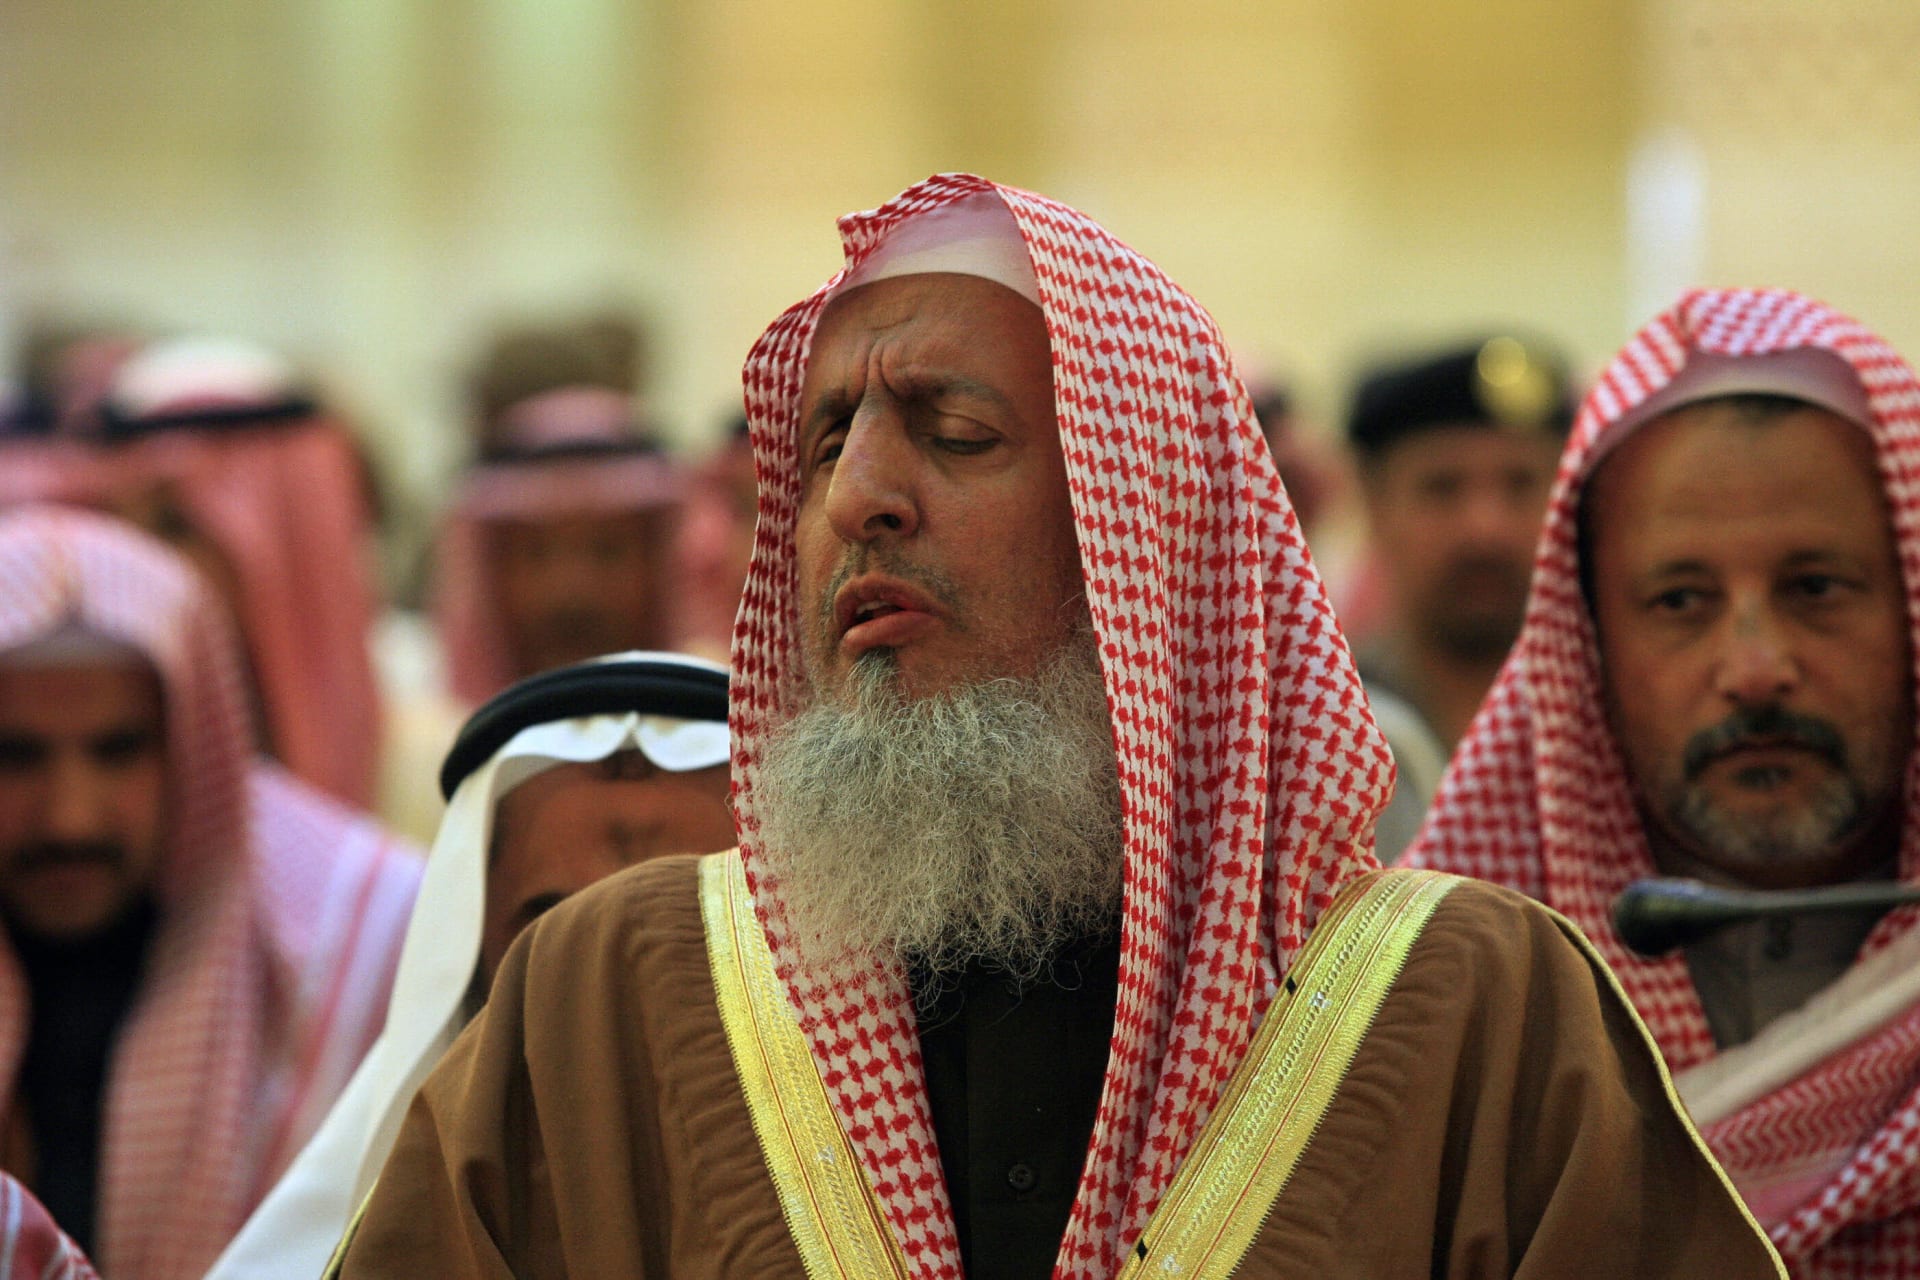 مفتي السعودية: مقاطعة قطر فيها مصلحة للمسلمين.. وأدعو "الإخوان المسلمين" للابتعاد عن "العصبية والغلو"